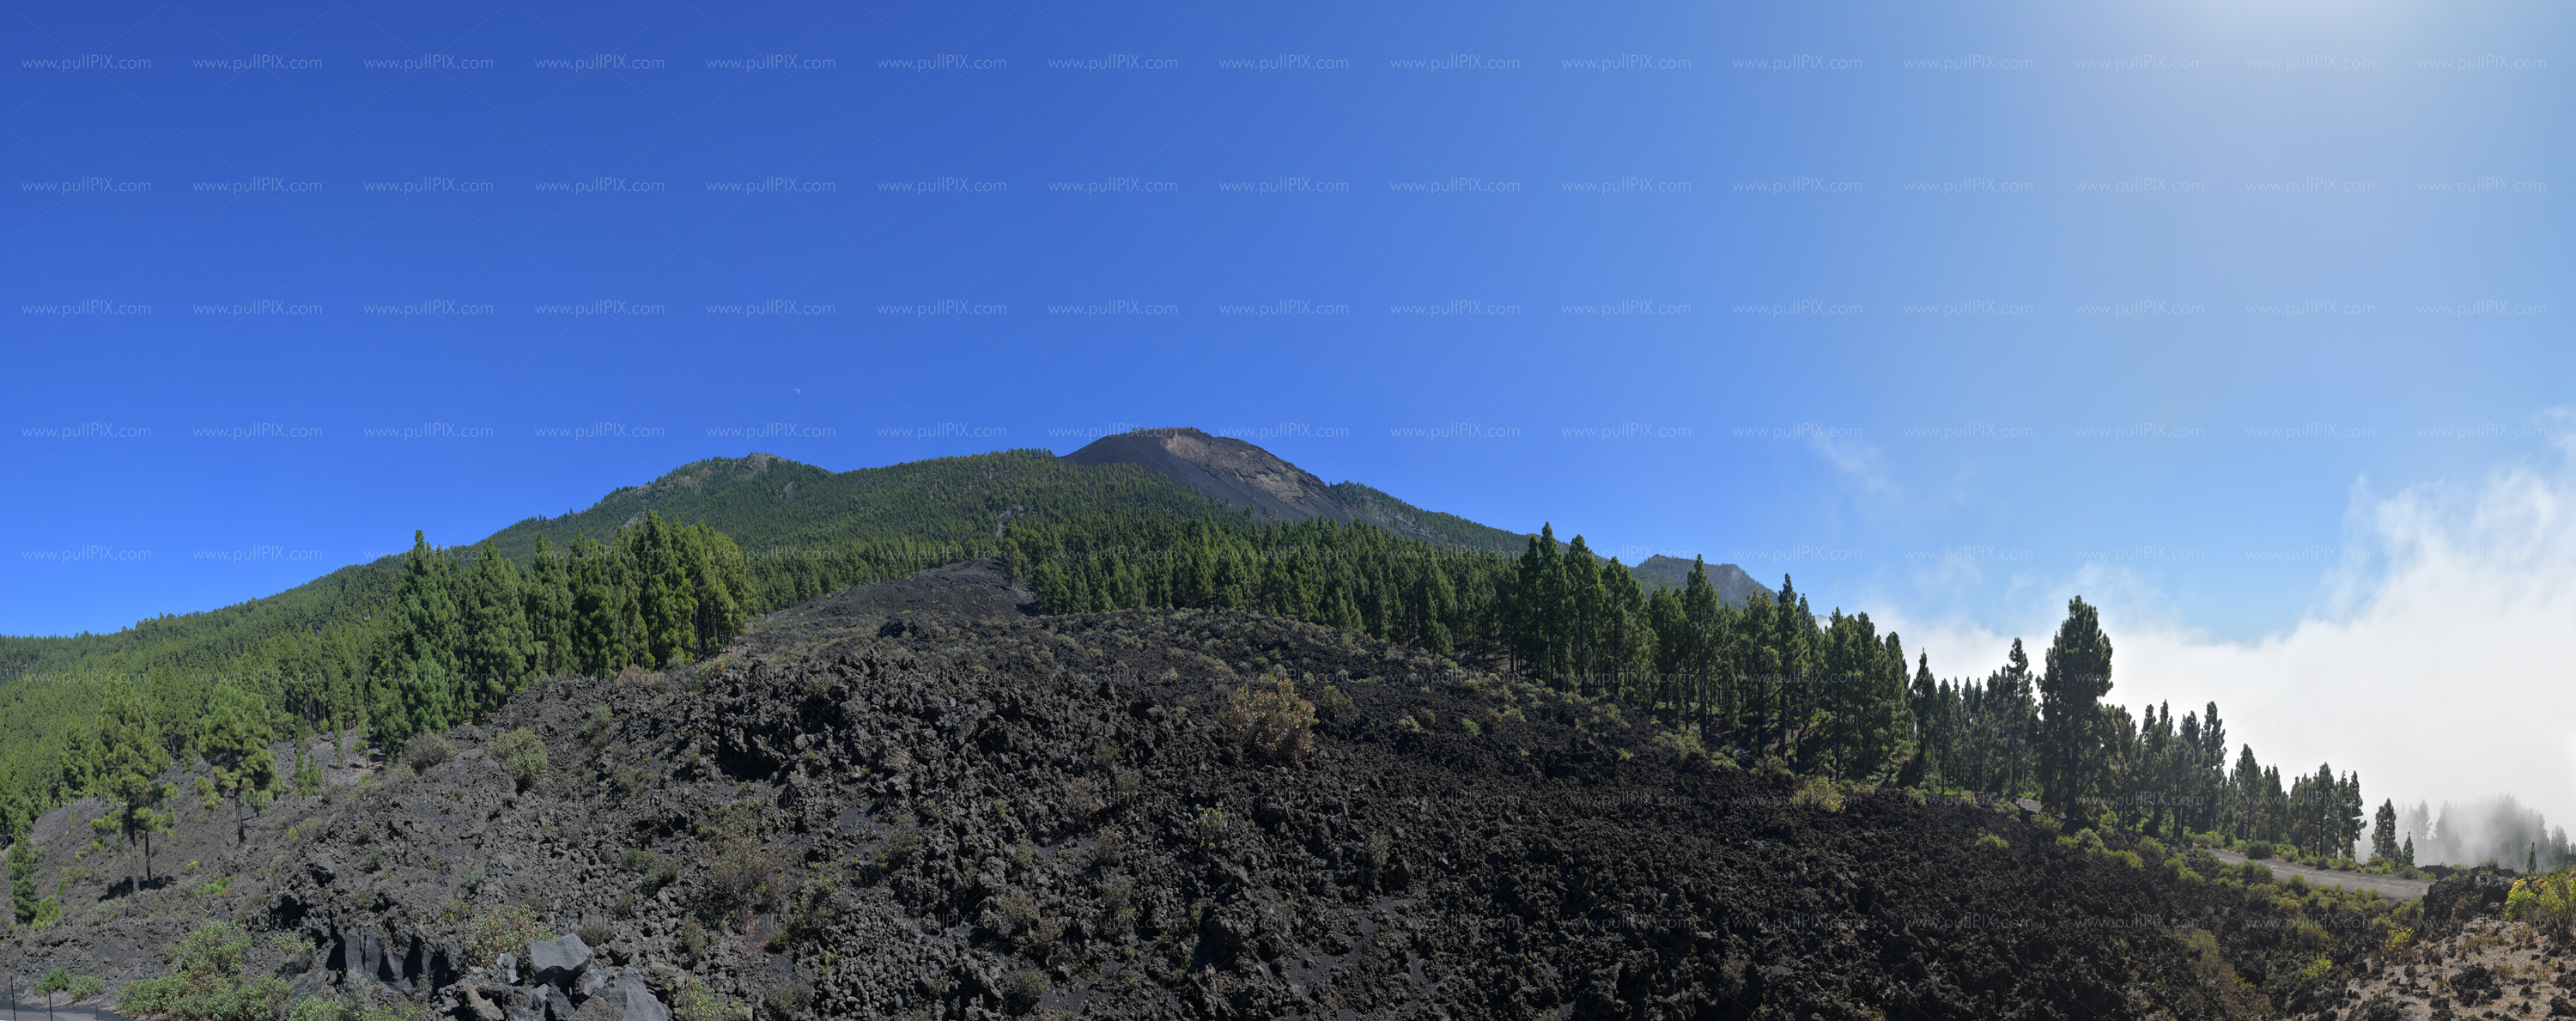 Preview La Palma Landschaft.jpg